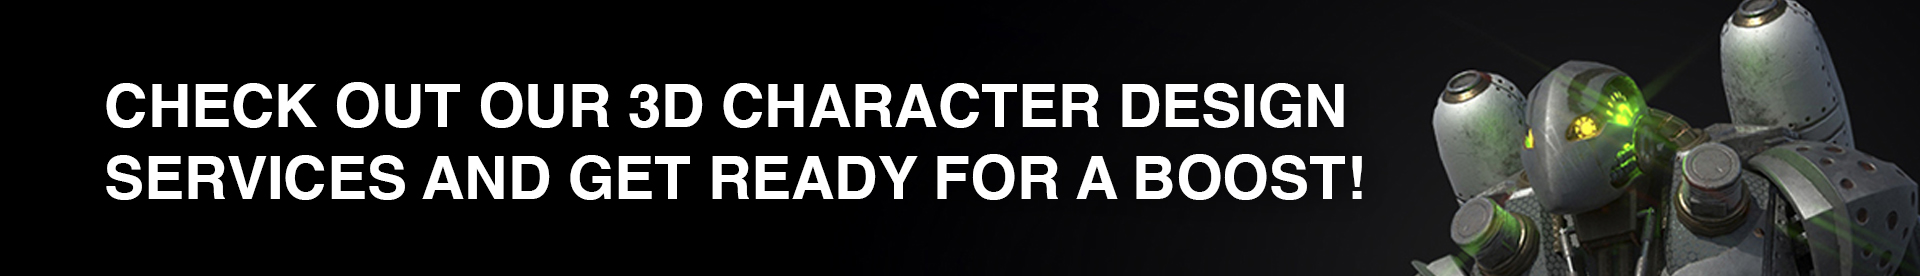 servicios de diseño de personajes 3d